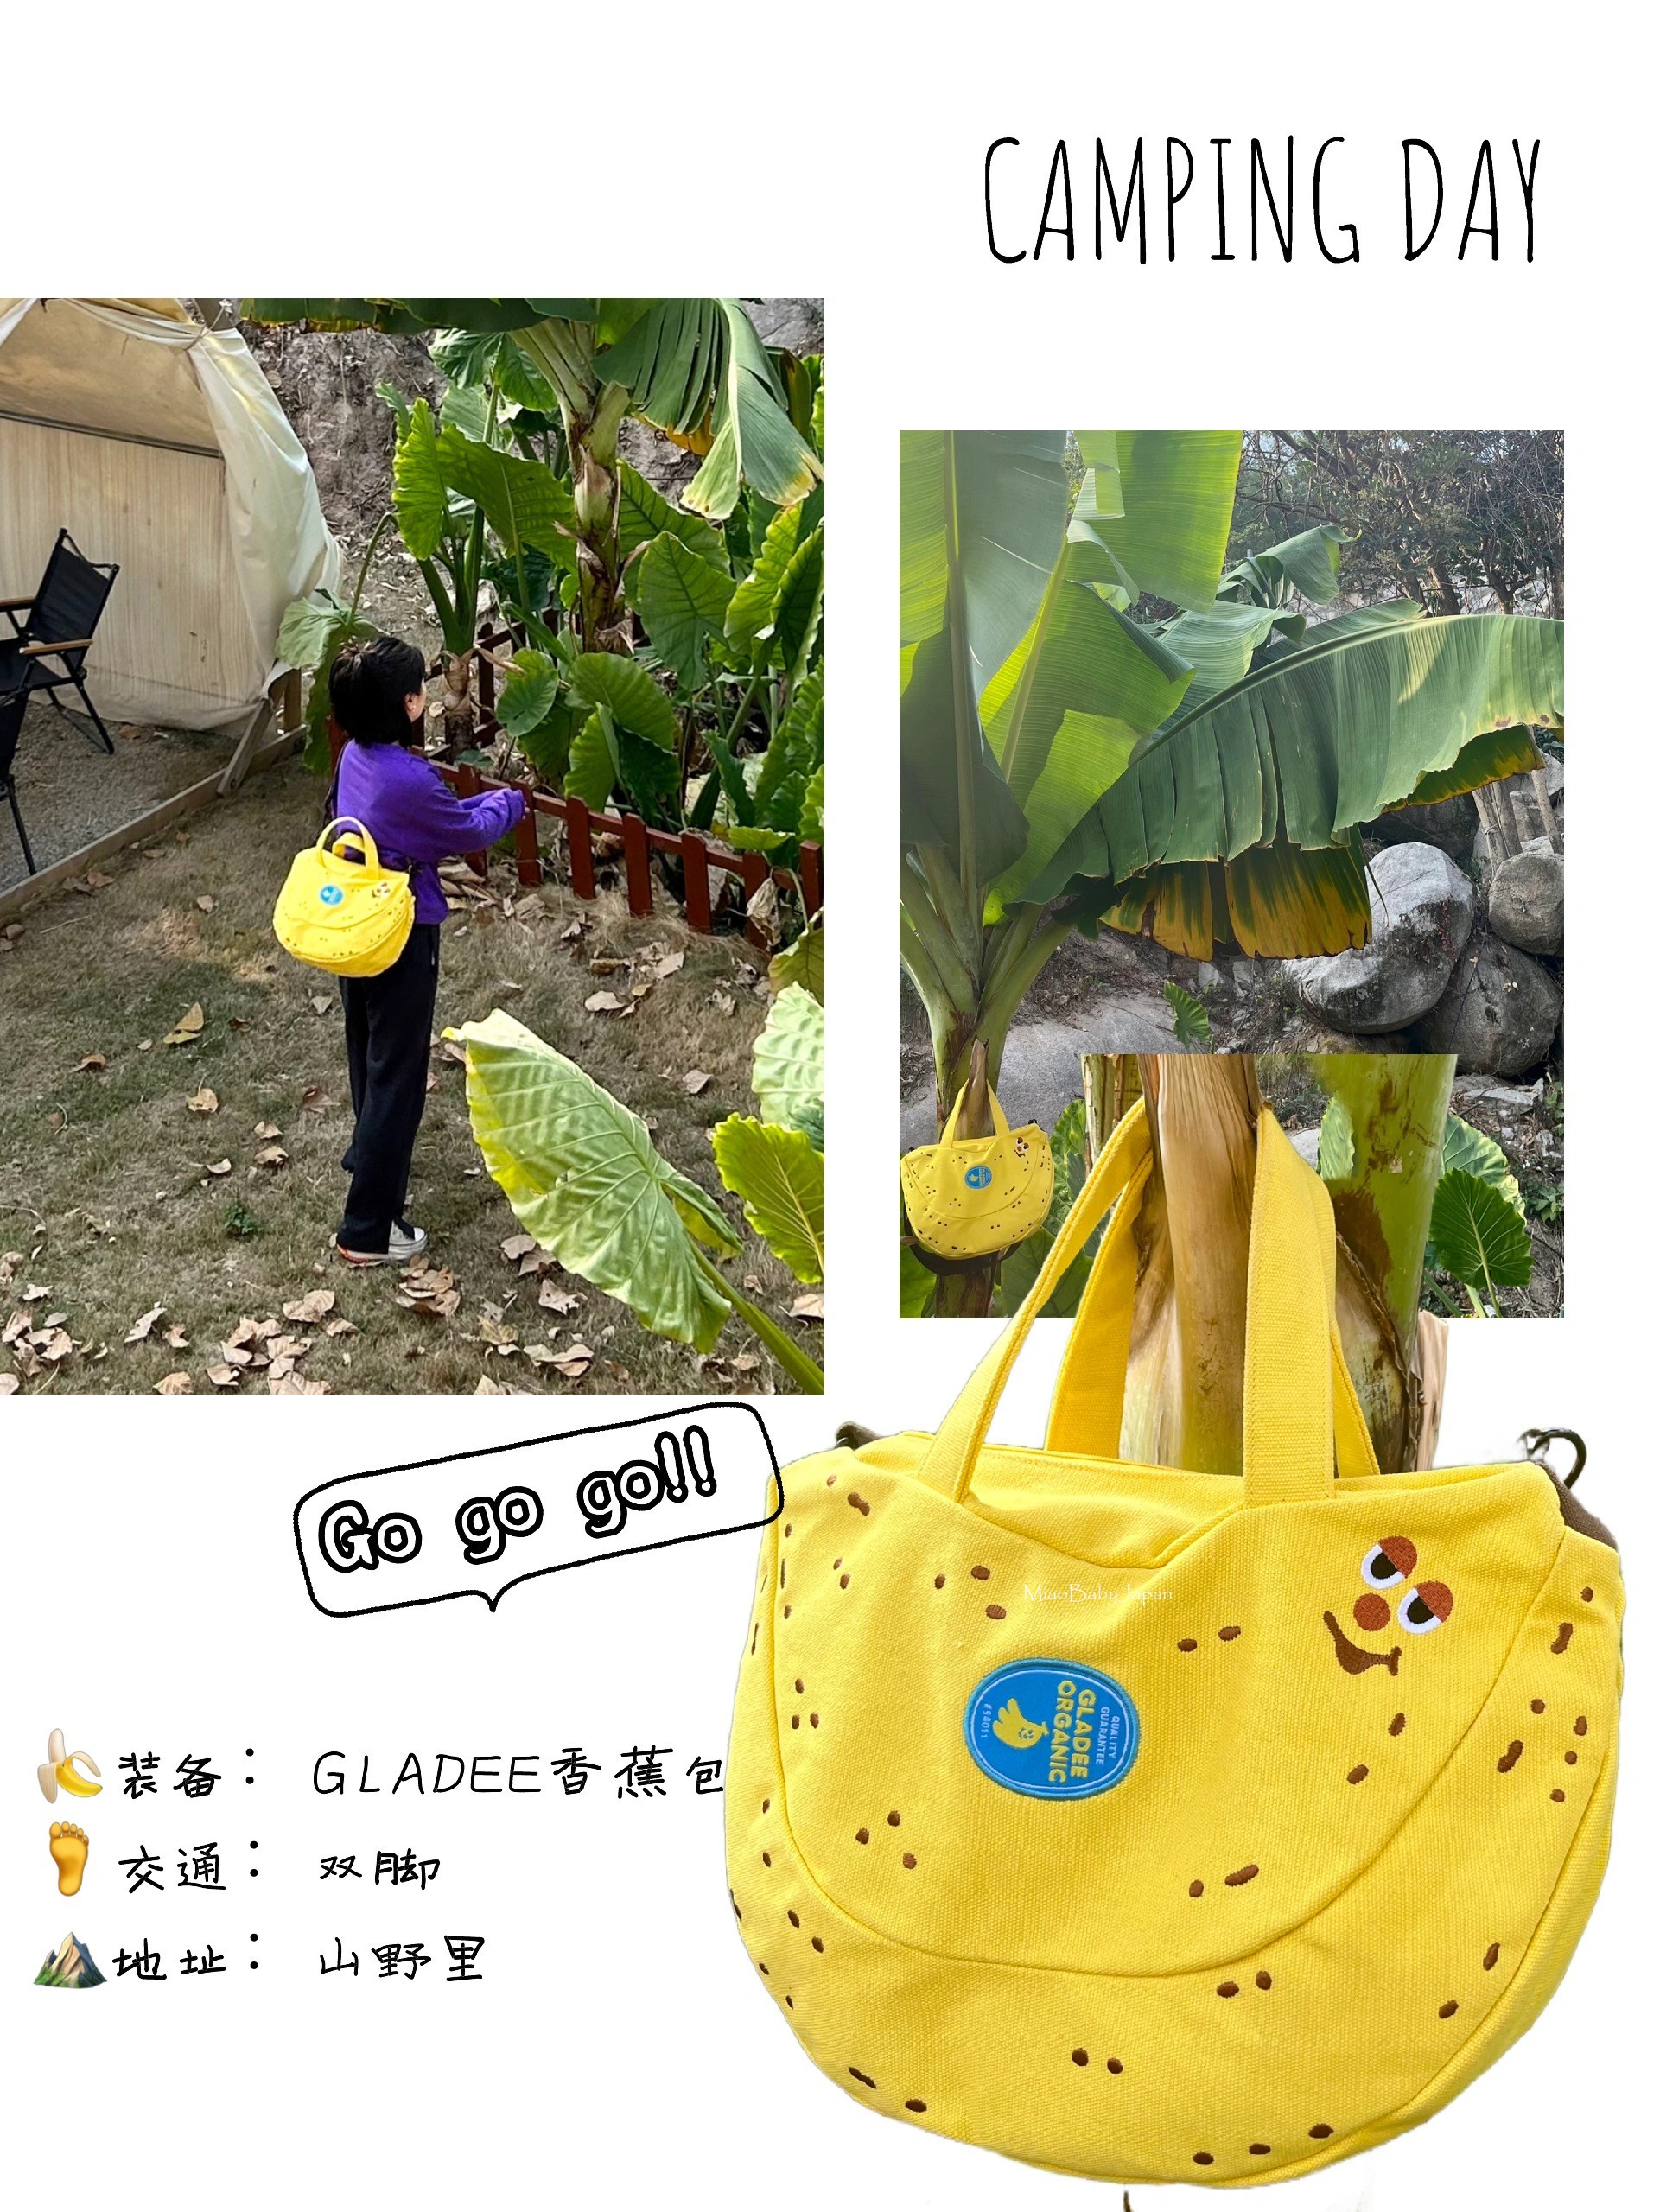 香蕉帆布包日本正版GLADEE手提斜挎包礼物蛙酱费沁源网红亲子包